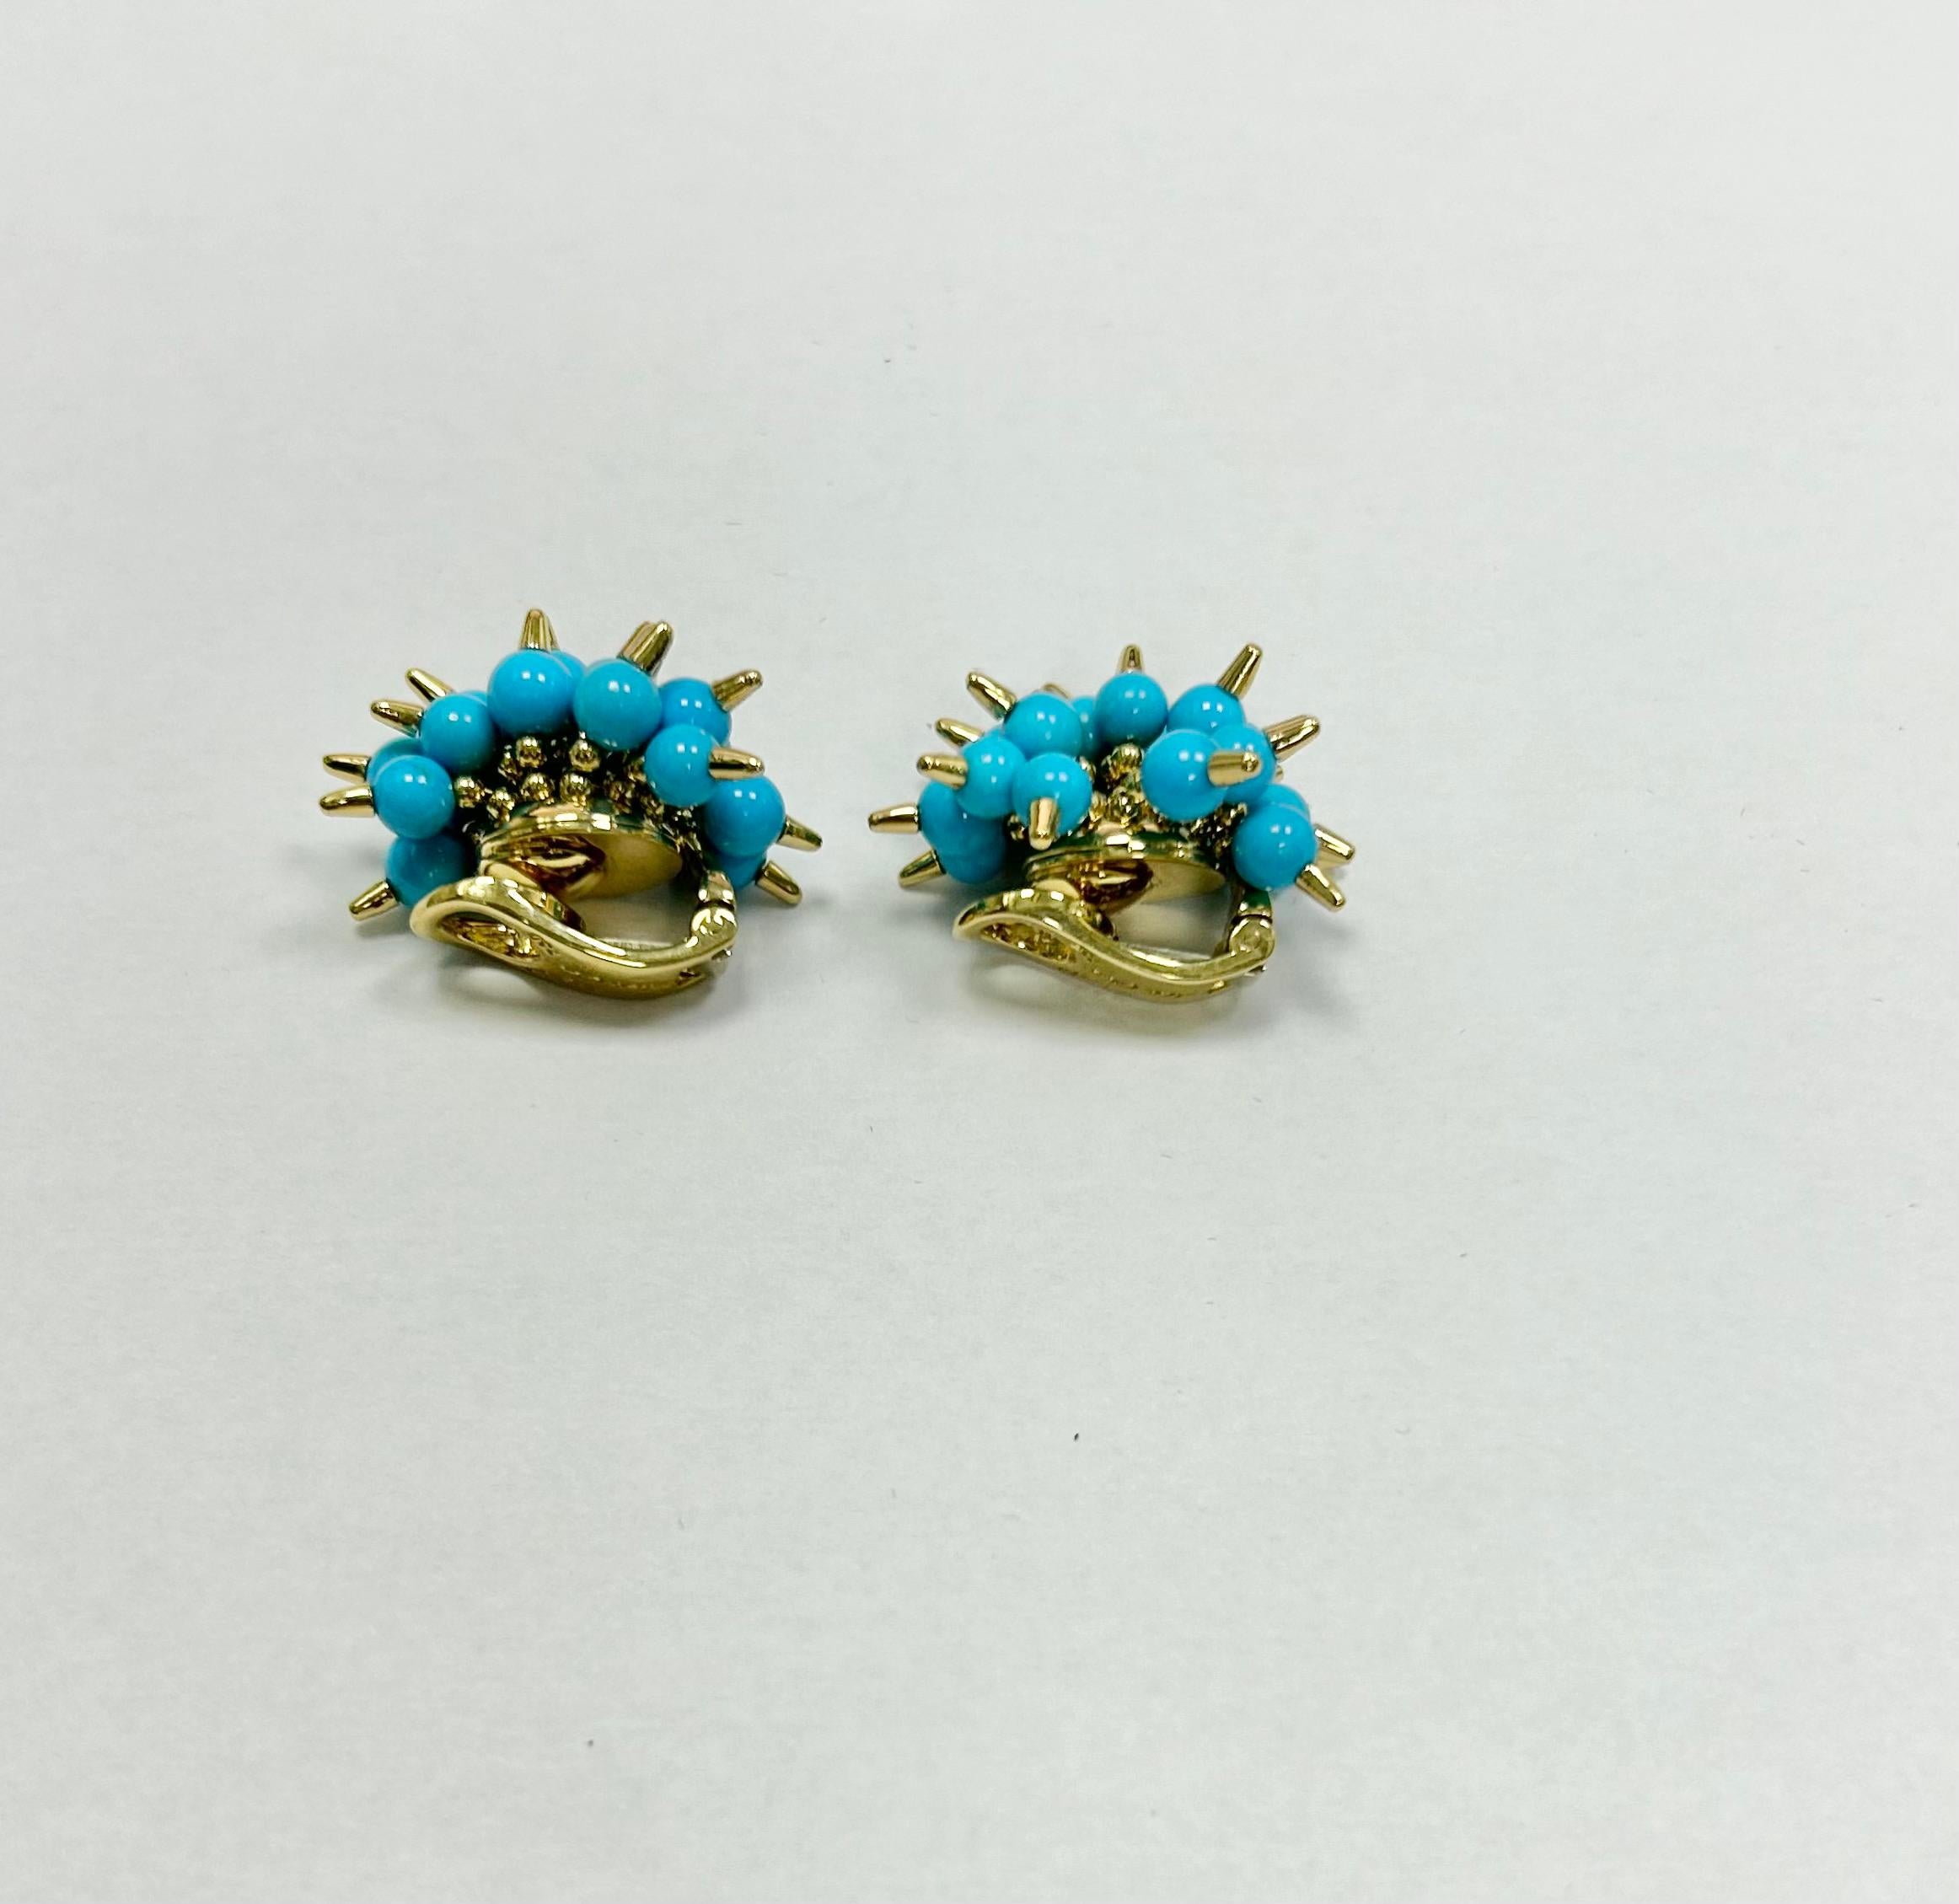 Superbe turquoise mobile avec pointes d'or approx 38 total boucles d'oreilles clip par Alittle brother estampillé 750 